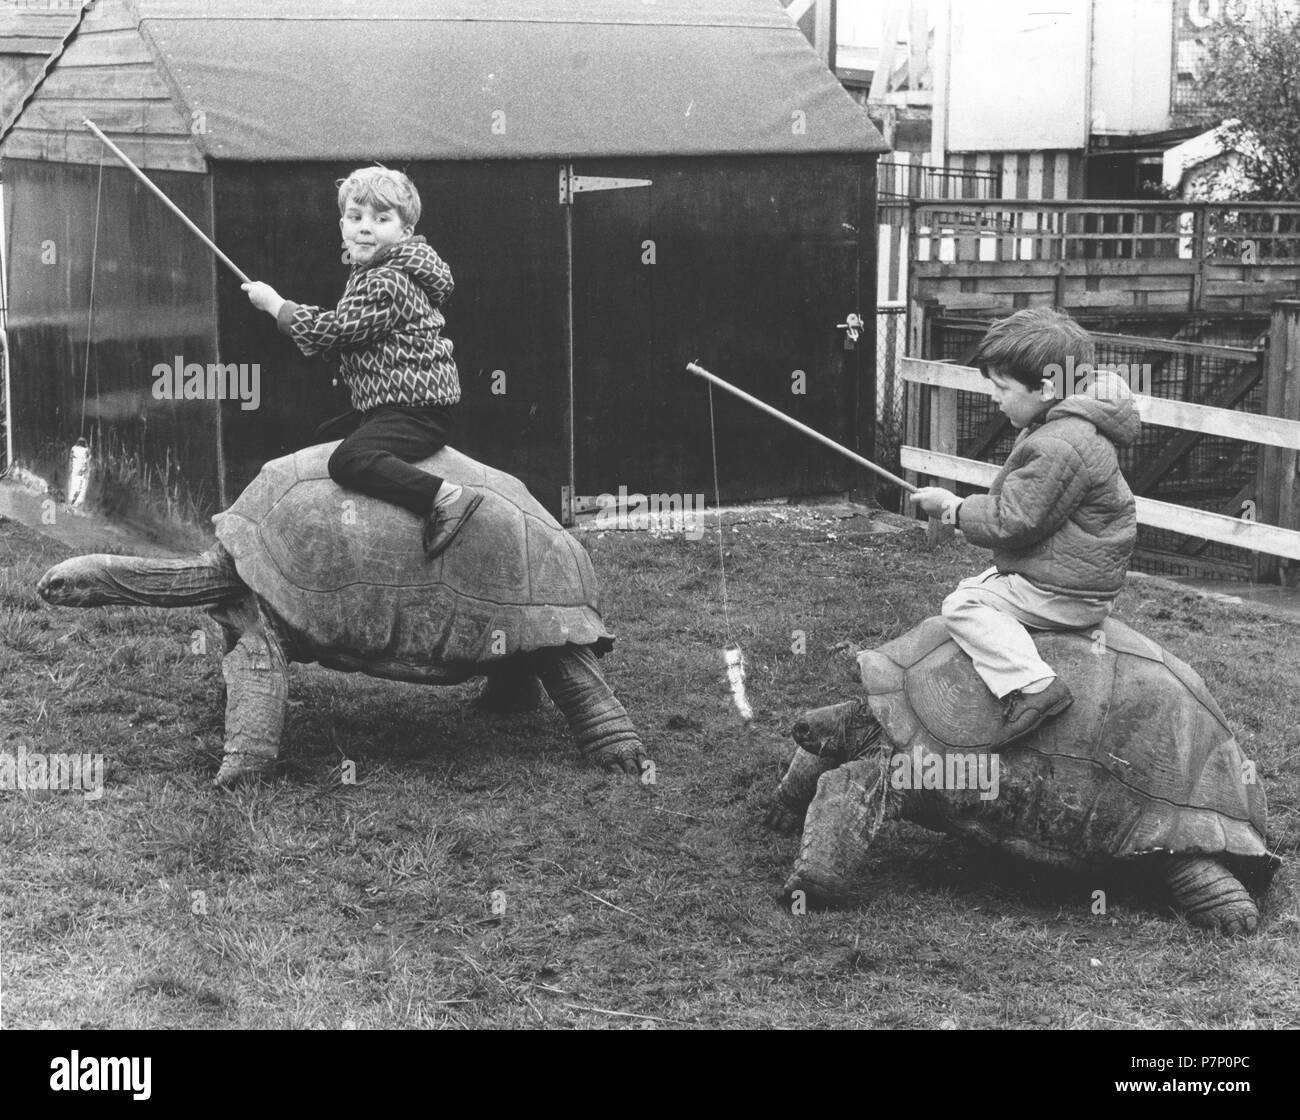 Les enfants voyagent sur des tortues géantes, Angleterre, Grande-Bretagne Banque D'Images